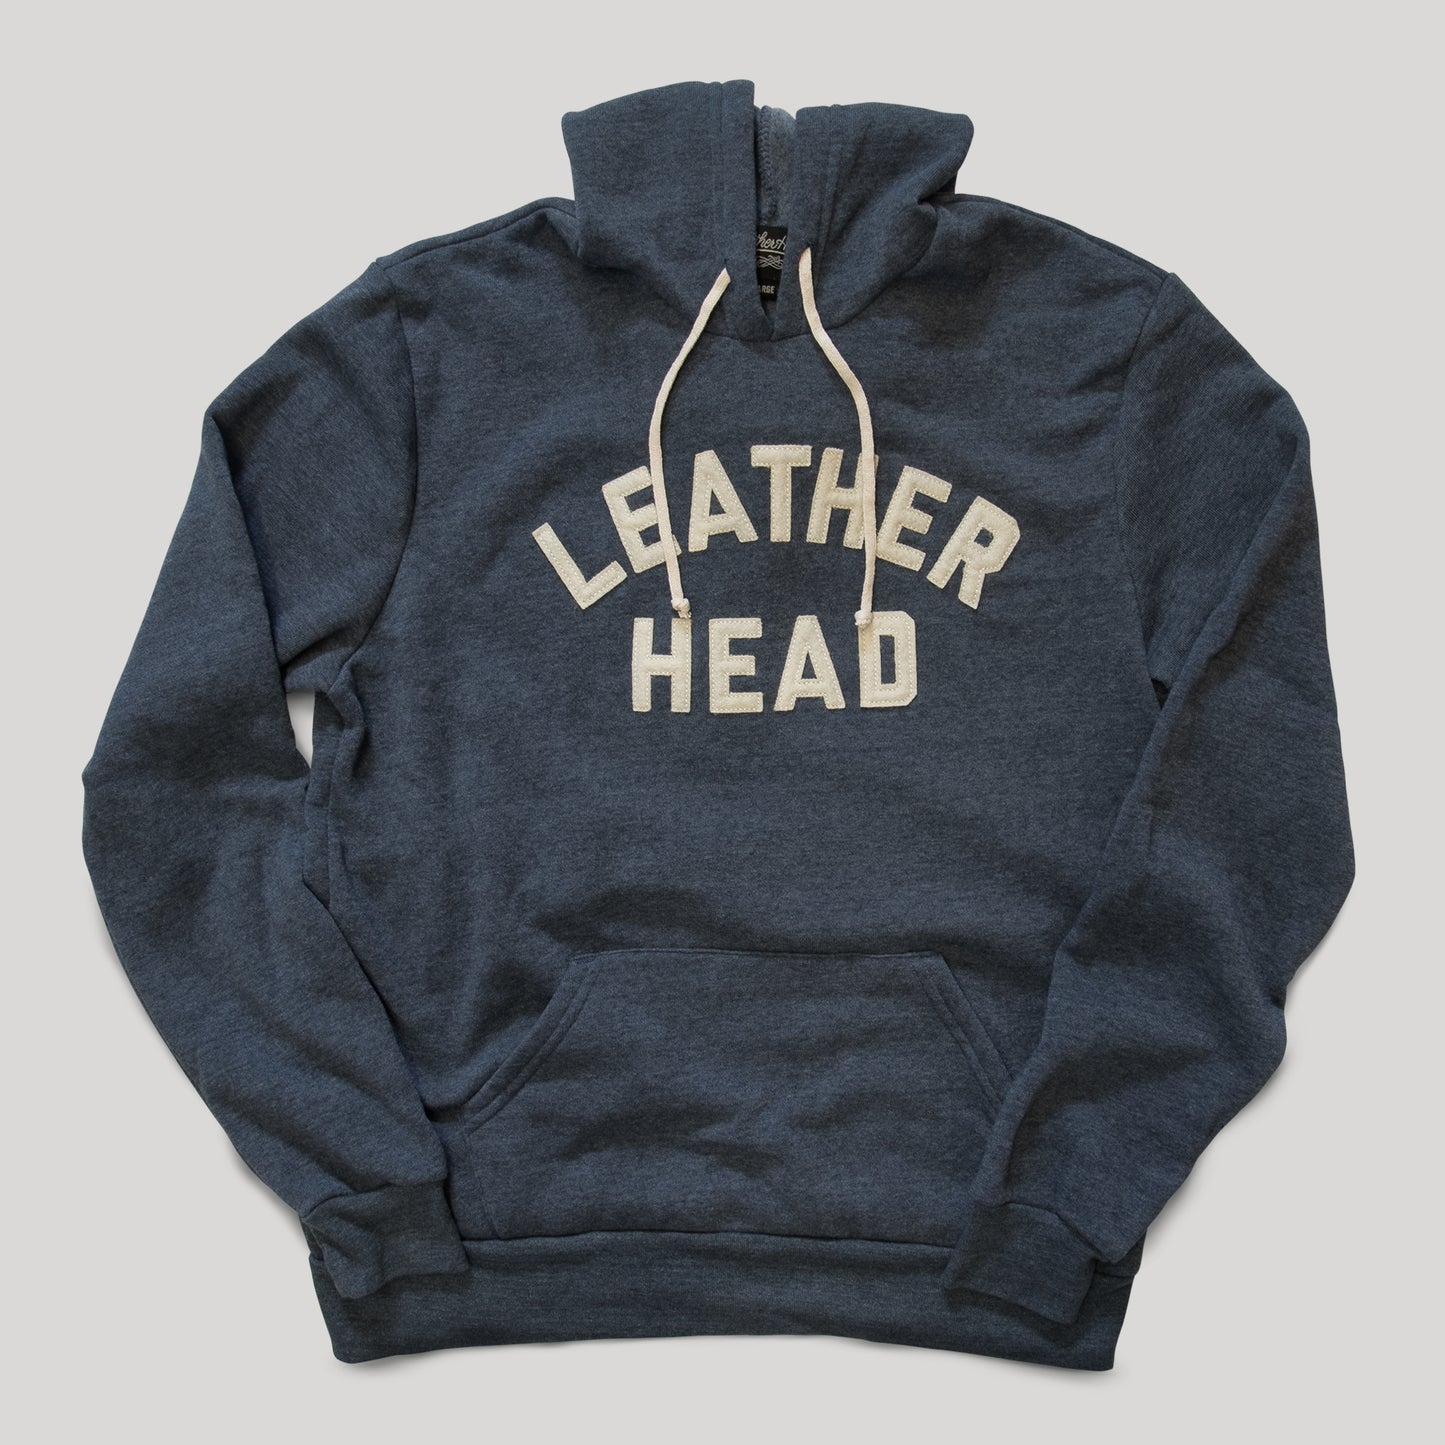 
                  
                    Leather Head Collegiate Hoodie - Navy
                  
                